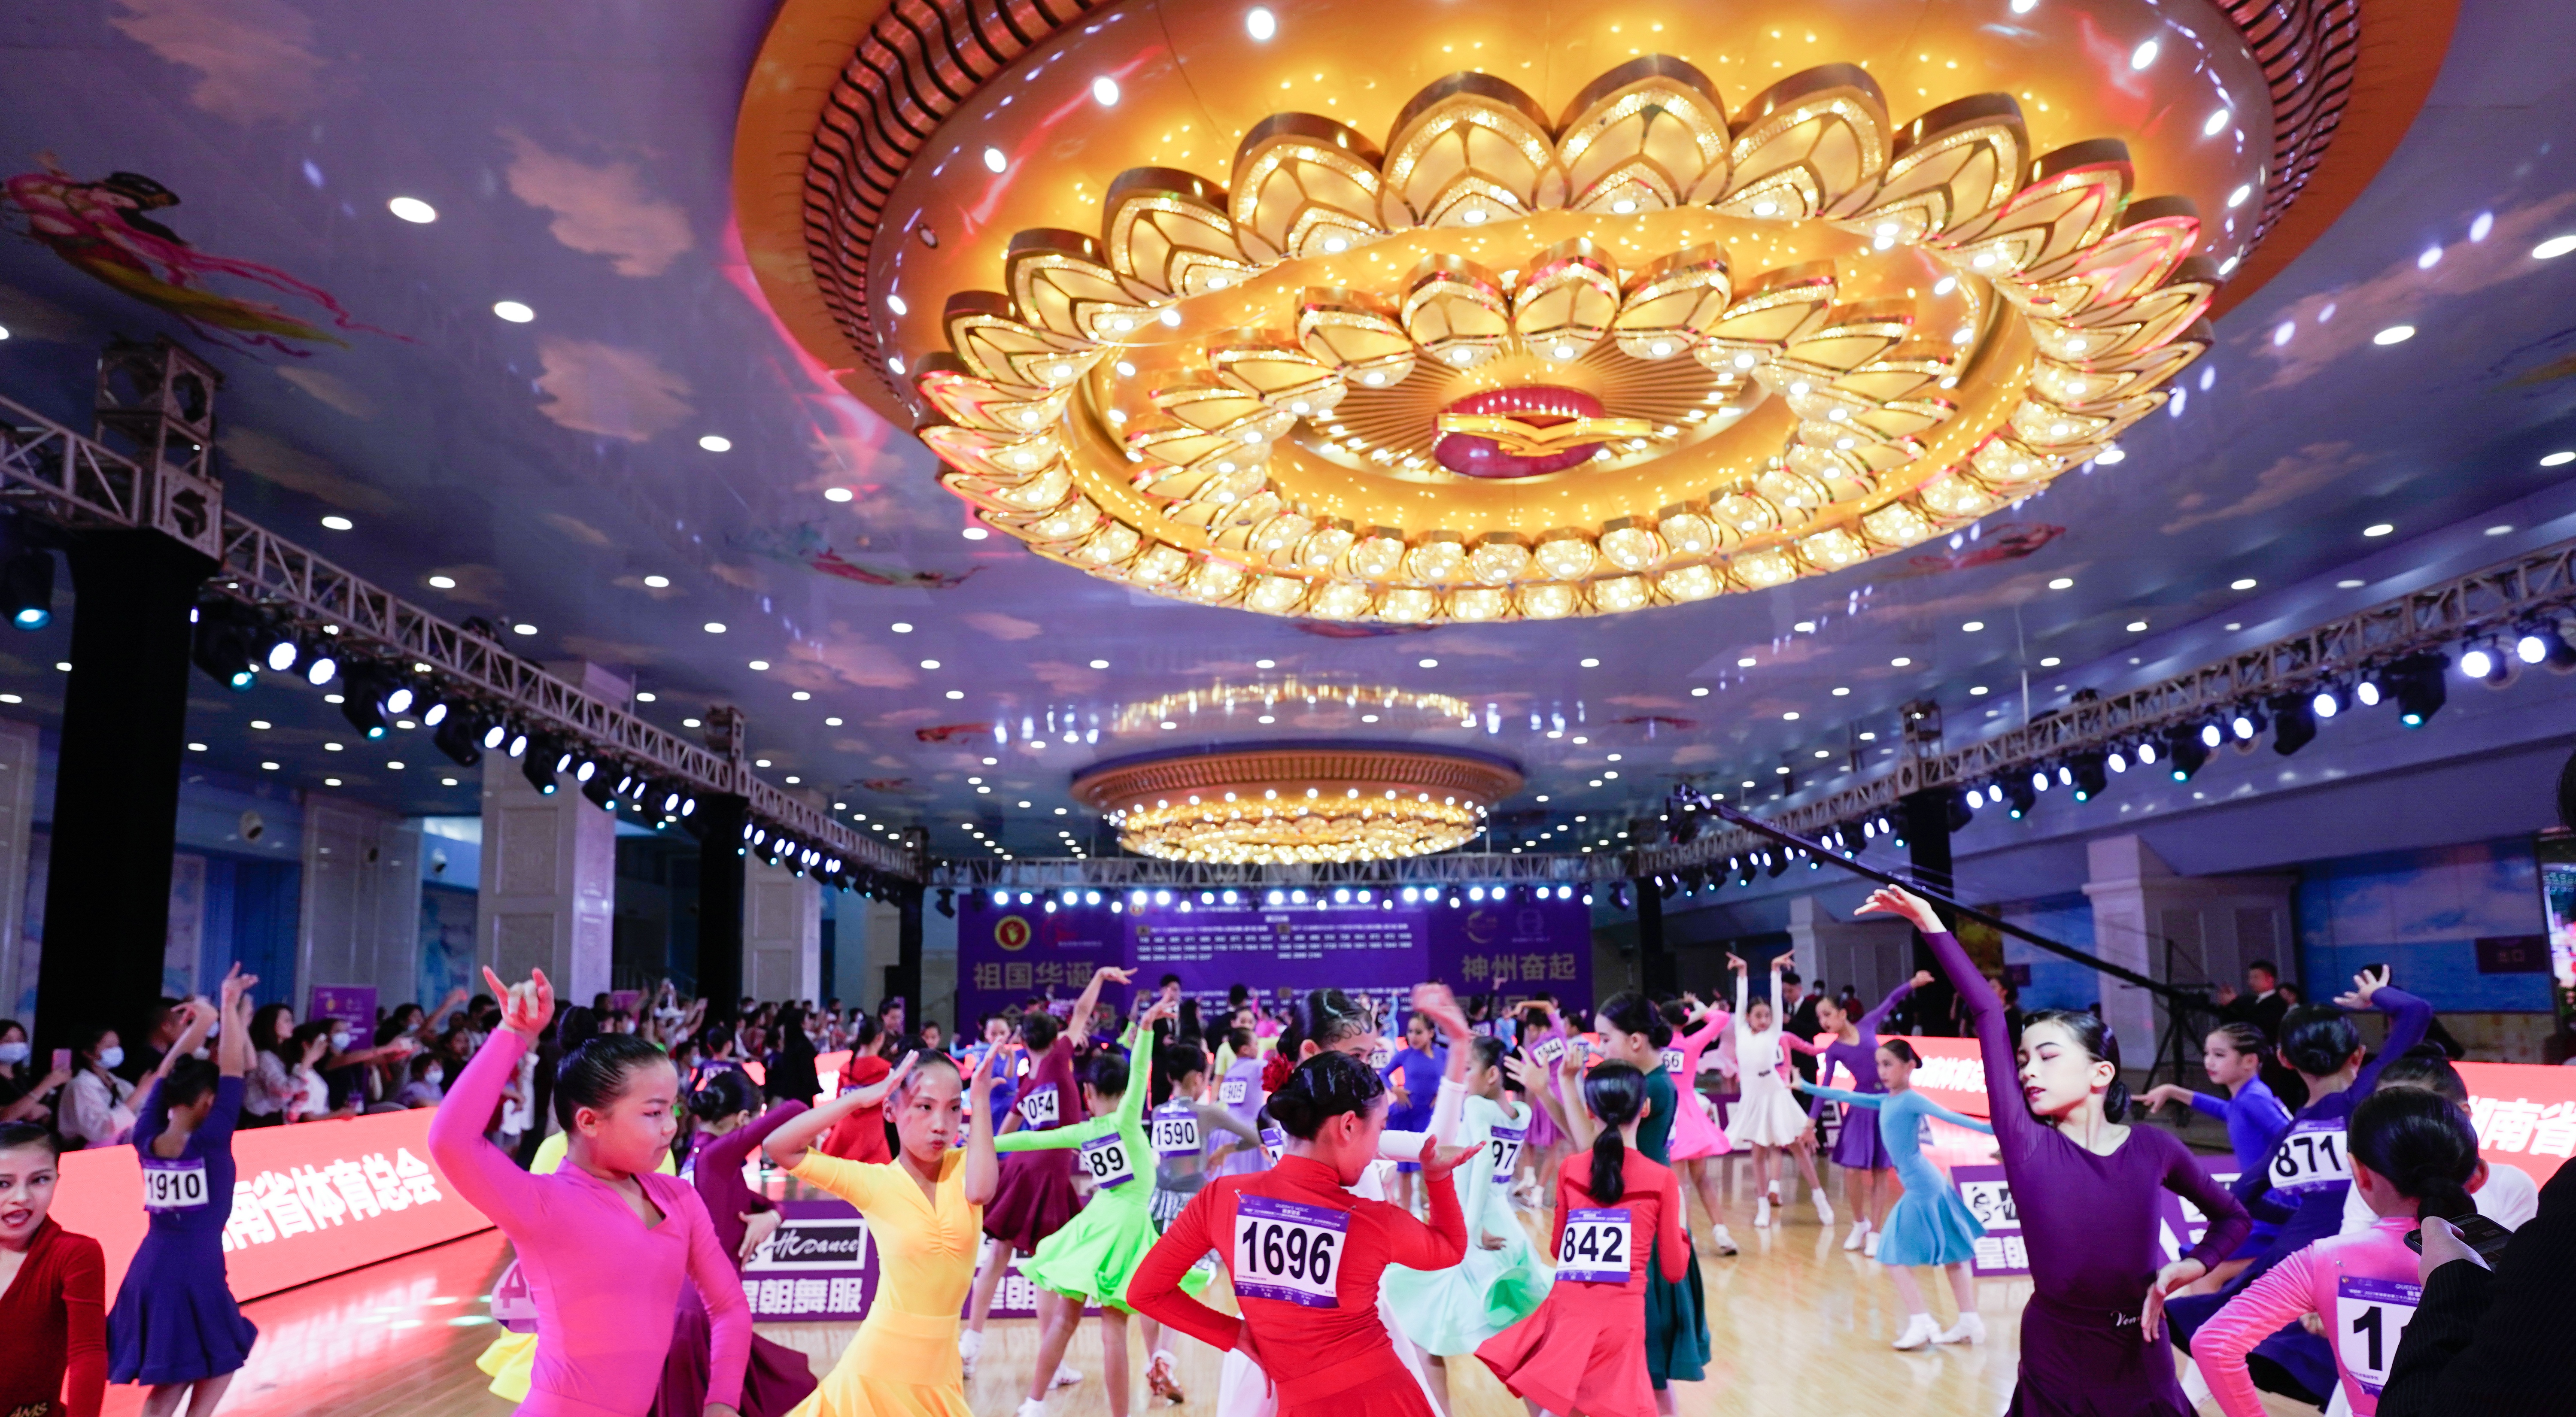 “锦鲲杯”2021年湖南省第二十八届体育舞蹈锦标赛暨中国·长沙体育舞蹈公开赛精彩瞬间